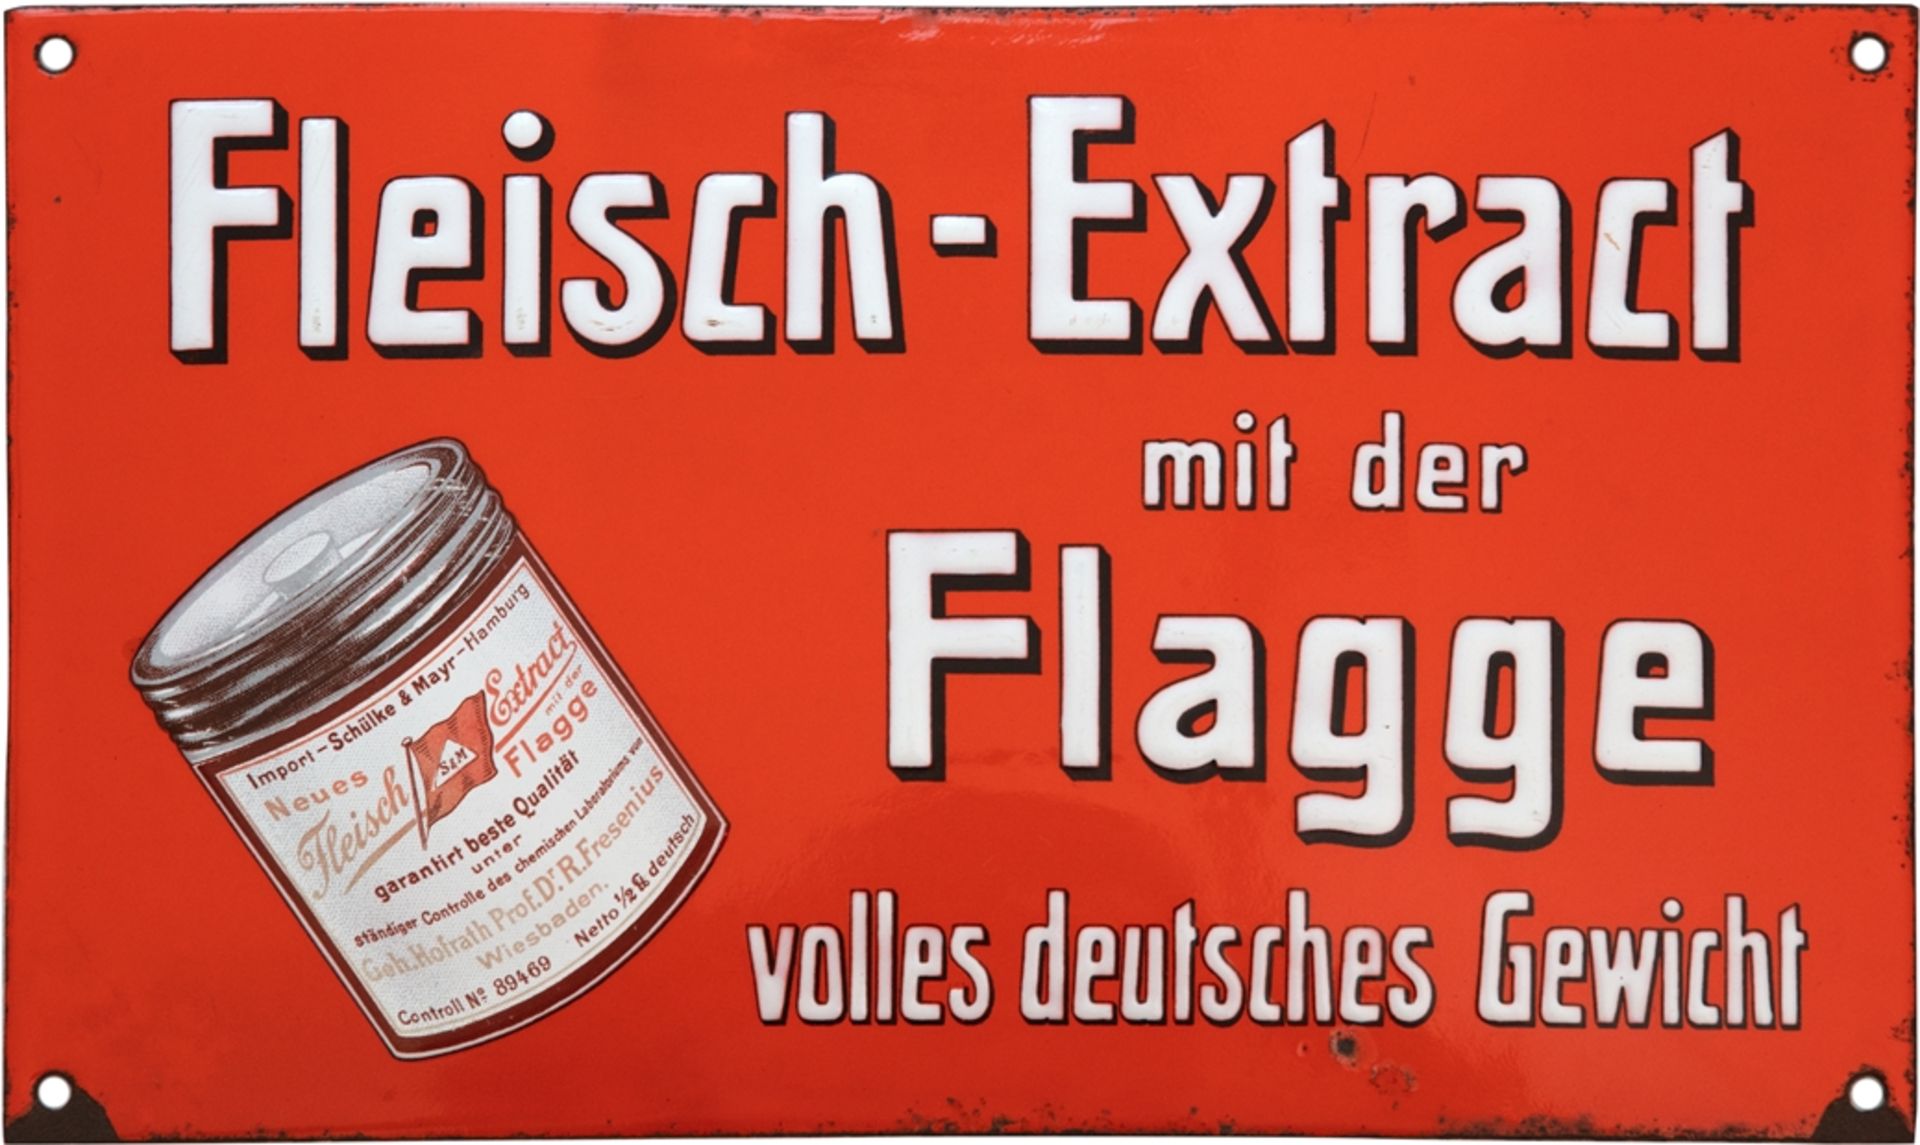 Enamel sign Fleisch Extract mit der Flagge, Hamburg, around 1900